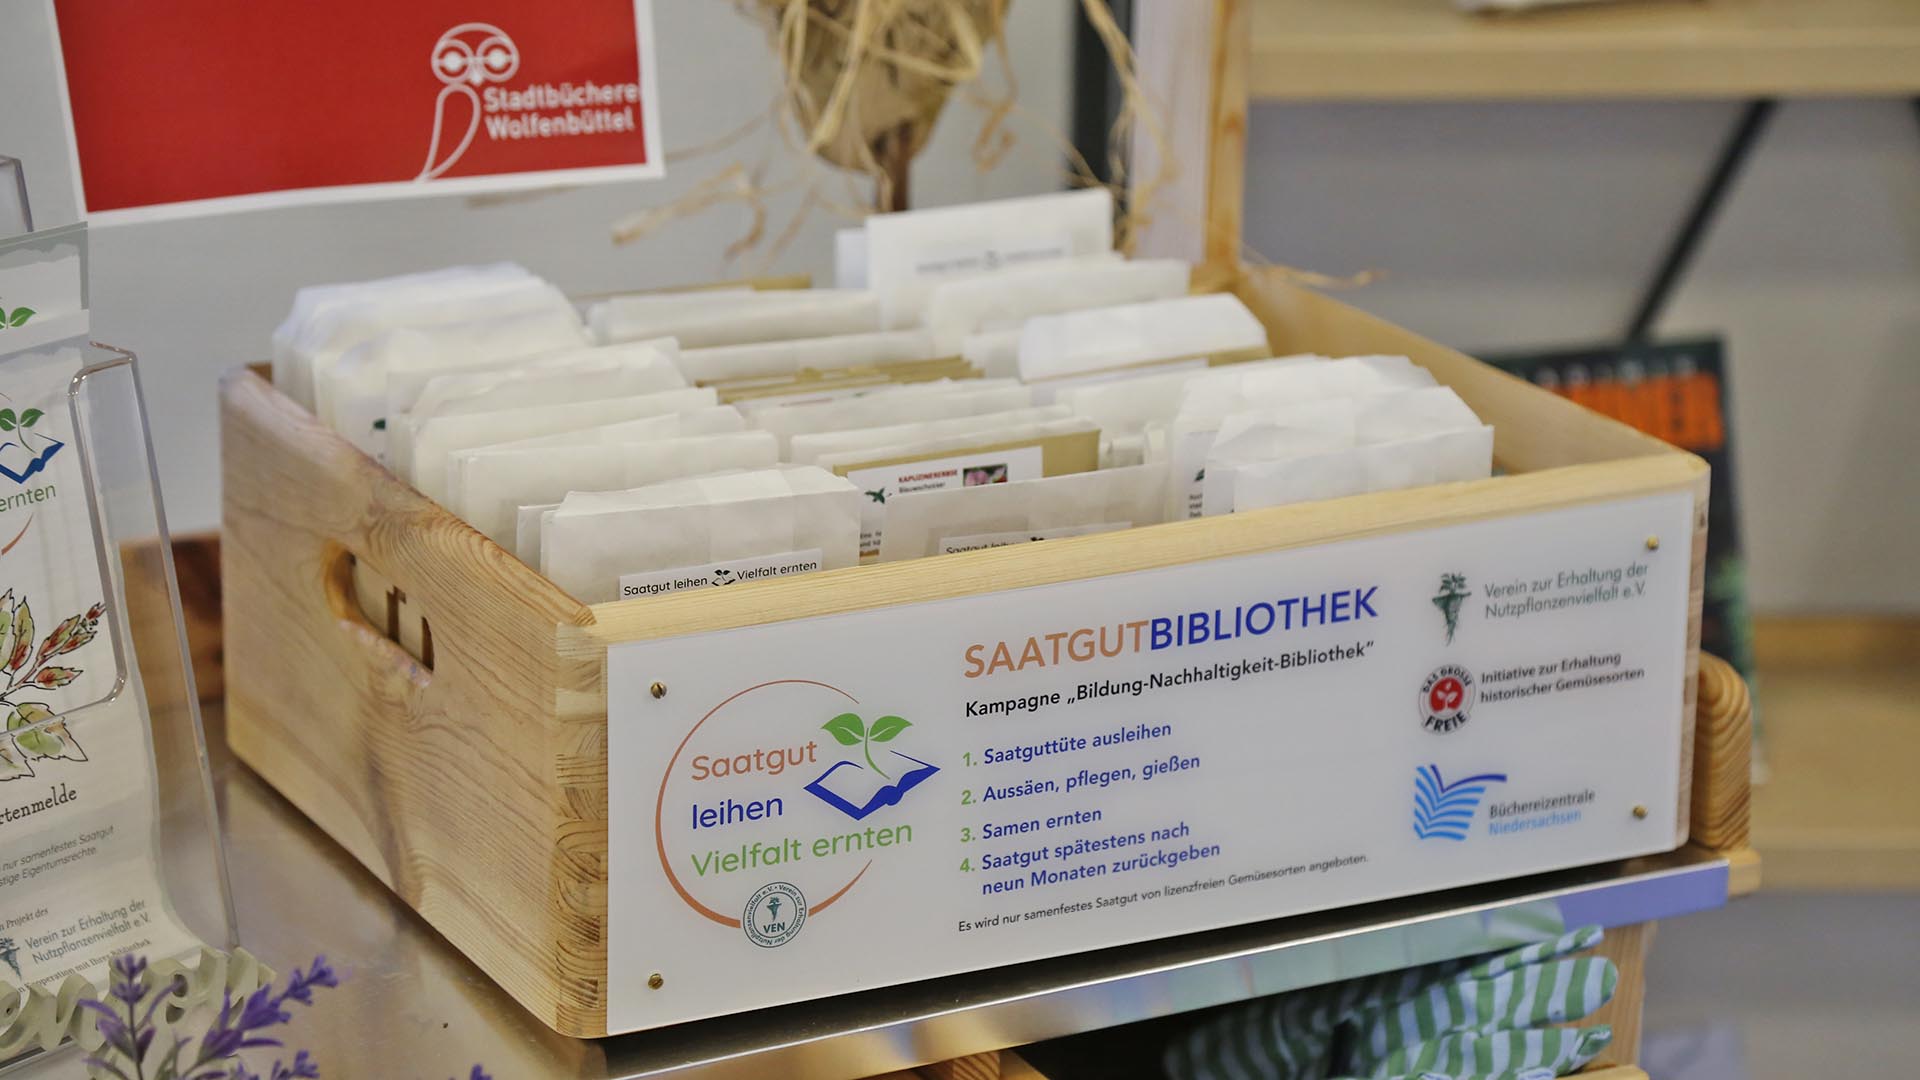 In einer Holzkiste stehen verschiedene braune Papiertütchen mit Saatgut, auf der Kiste steht "Saatgutbibliothek".